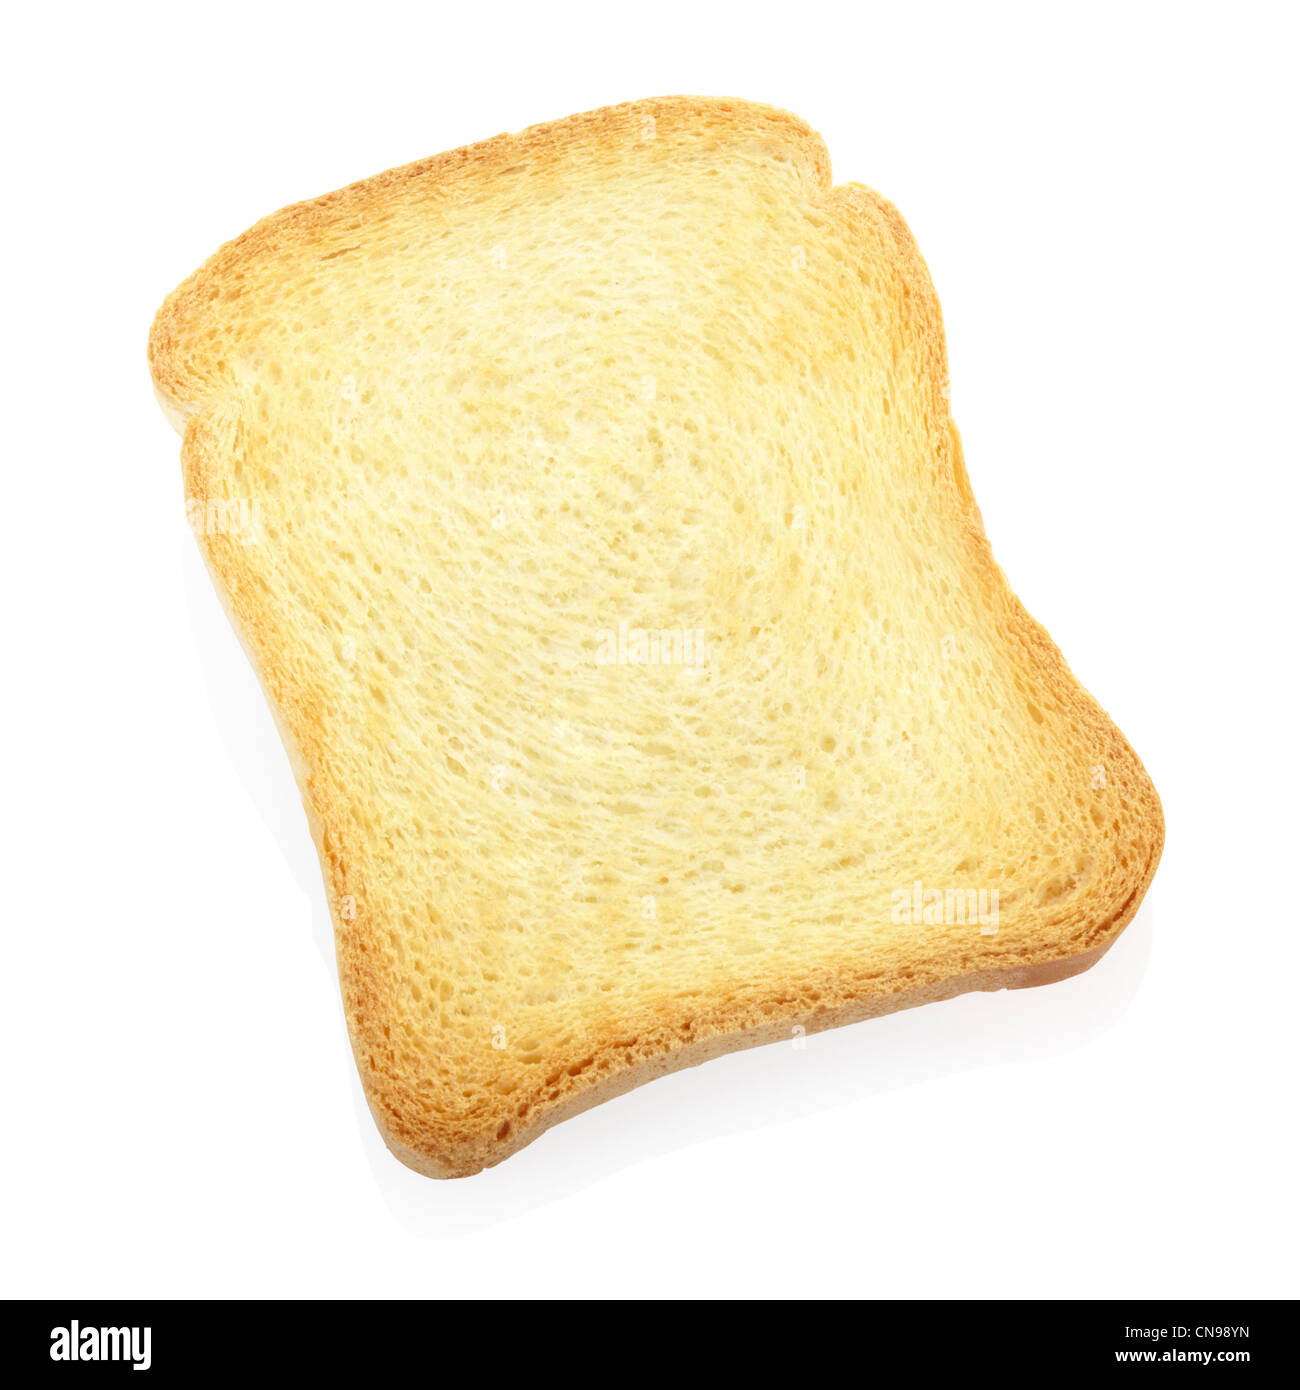 Toast, rusk bread slice Stock Photo